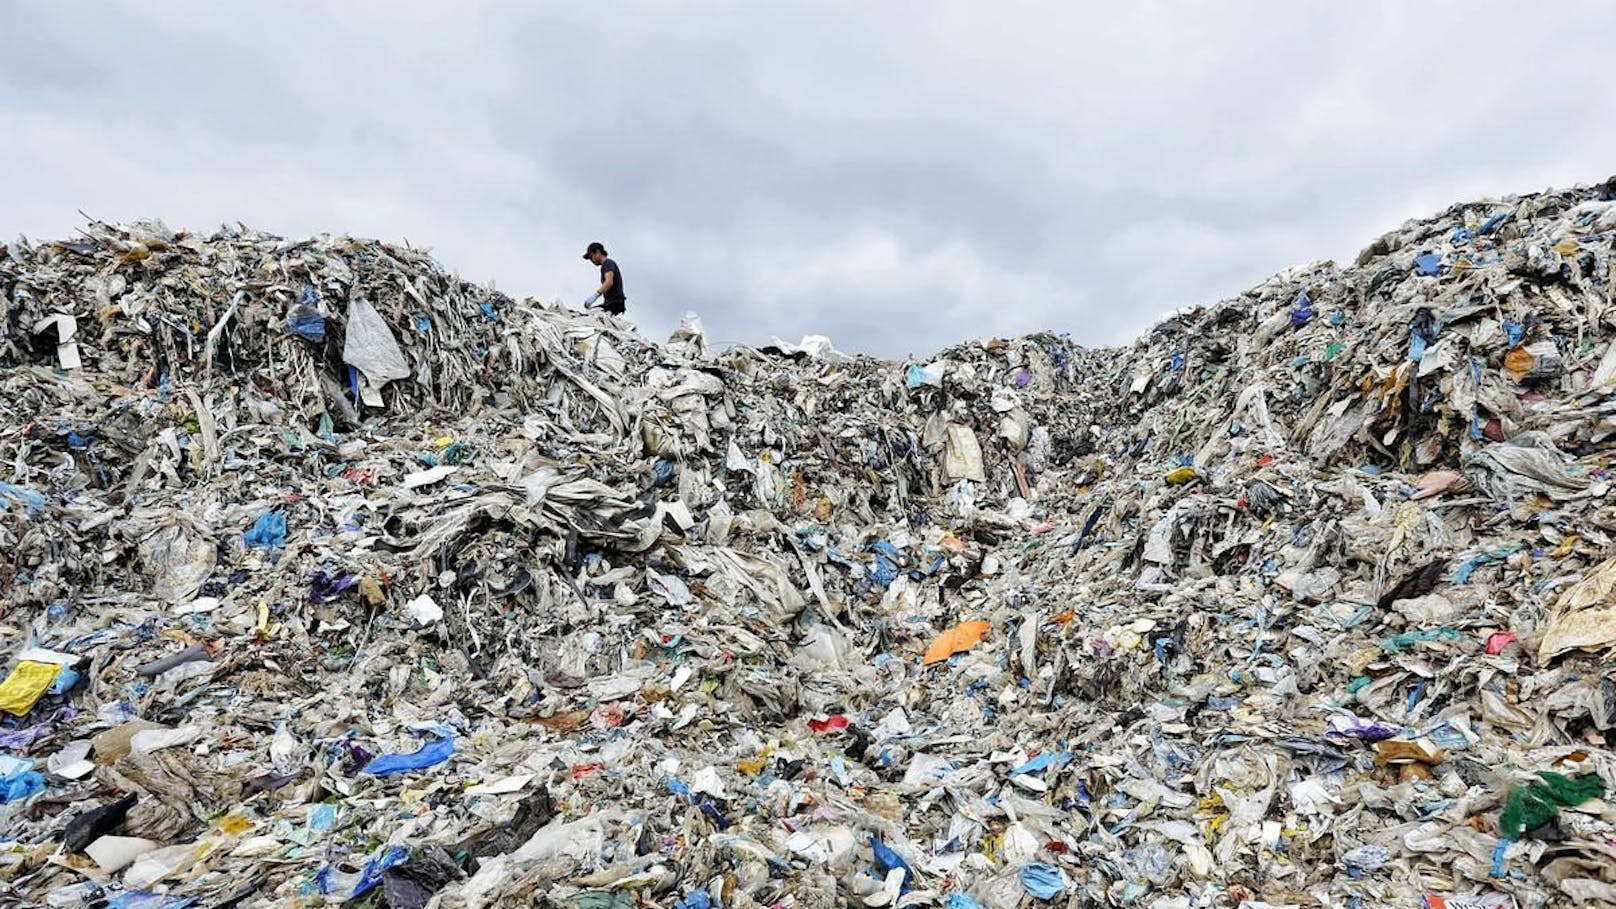 Seit China den Import von Plastikmüll verboten hat, haben Länder in Südostasien eine erhöhte Menge an Plastikmüll akzeptiert - mit verheerenden Folgen für Mensch und Natur.<br>